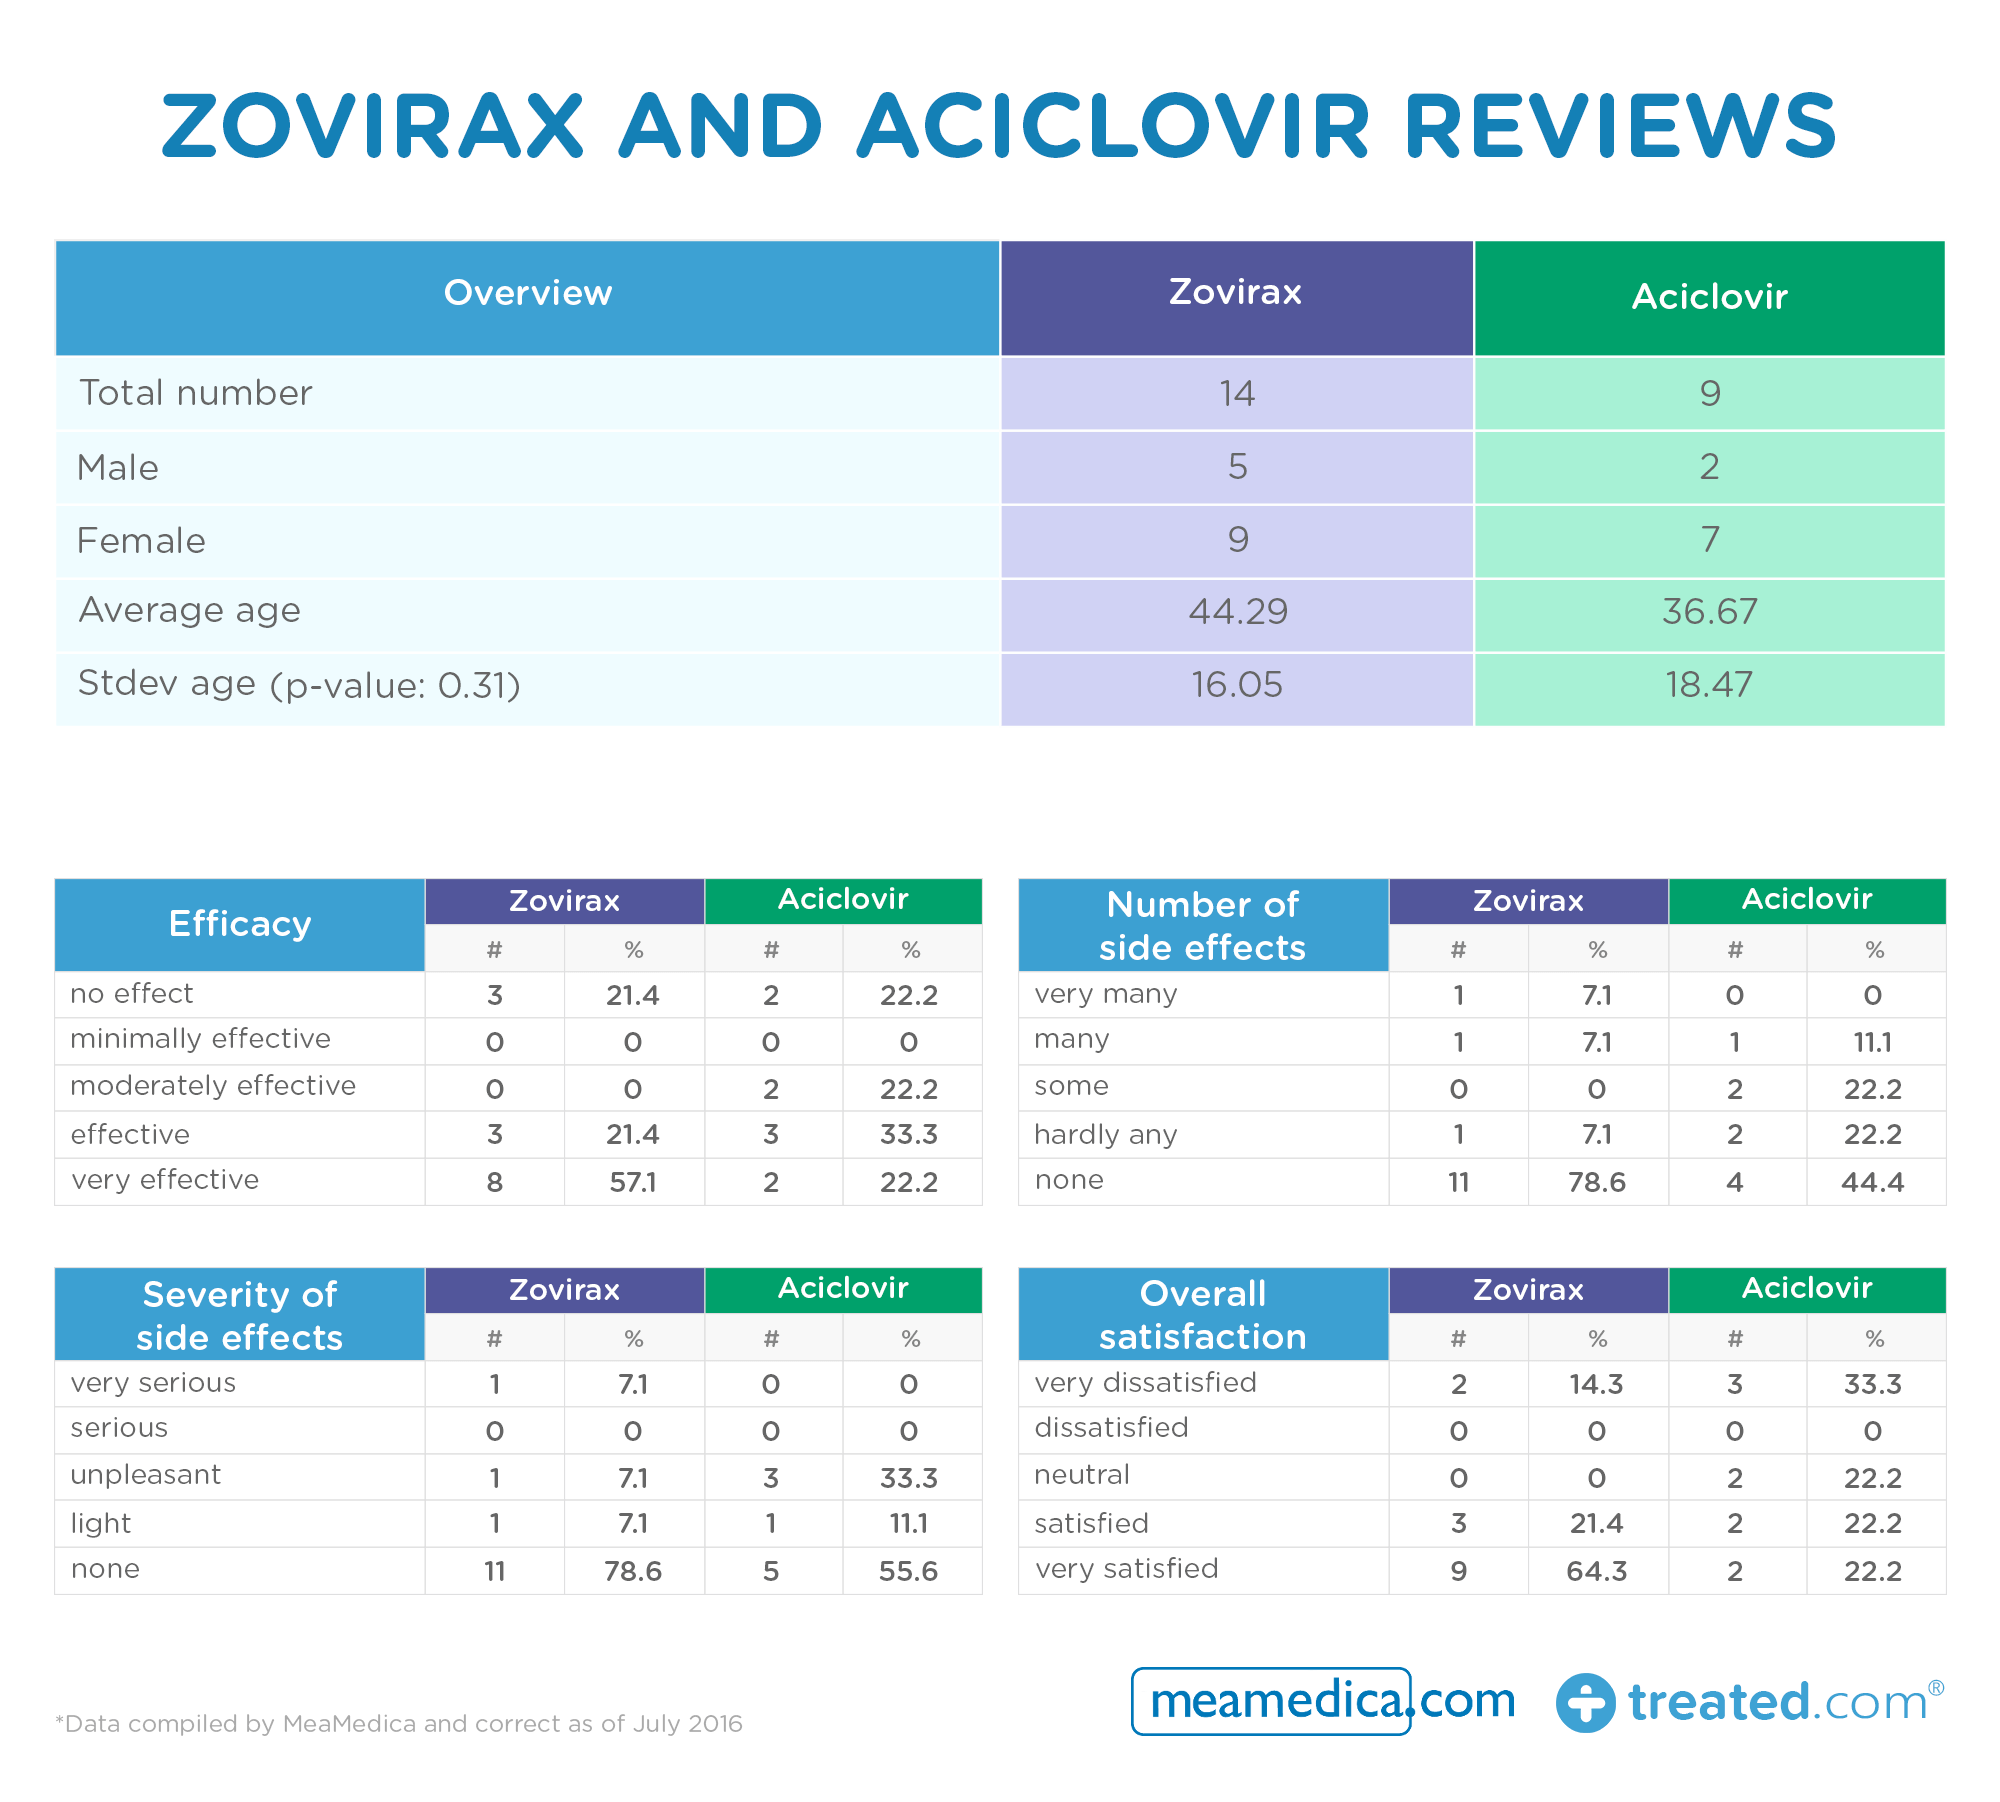 Zovirax and Aciclovir reviews table